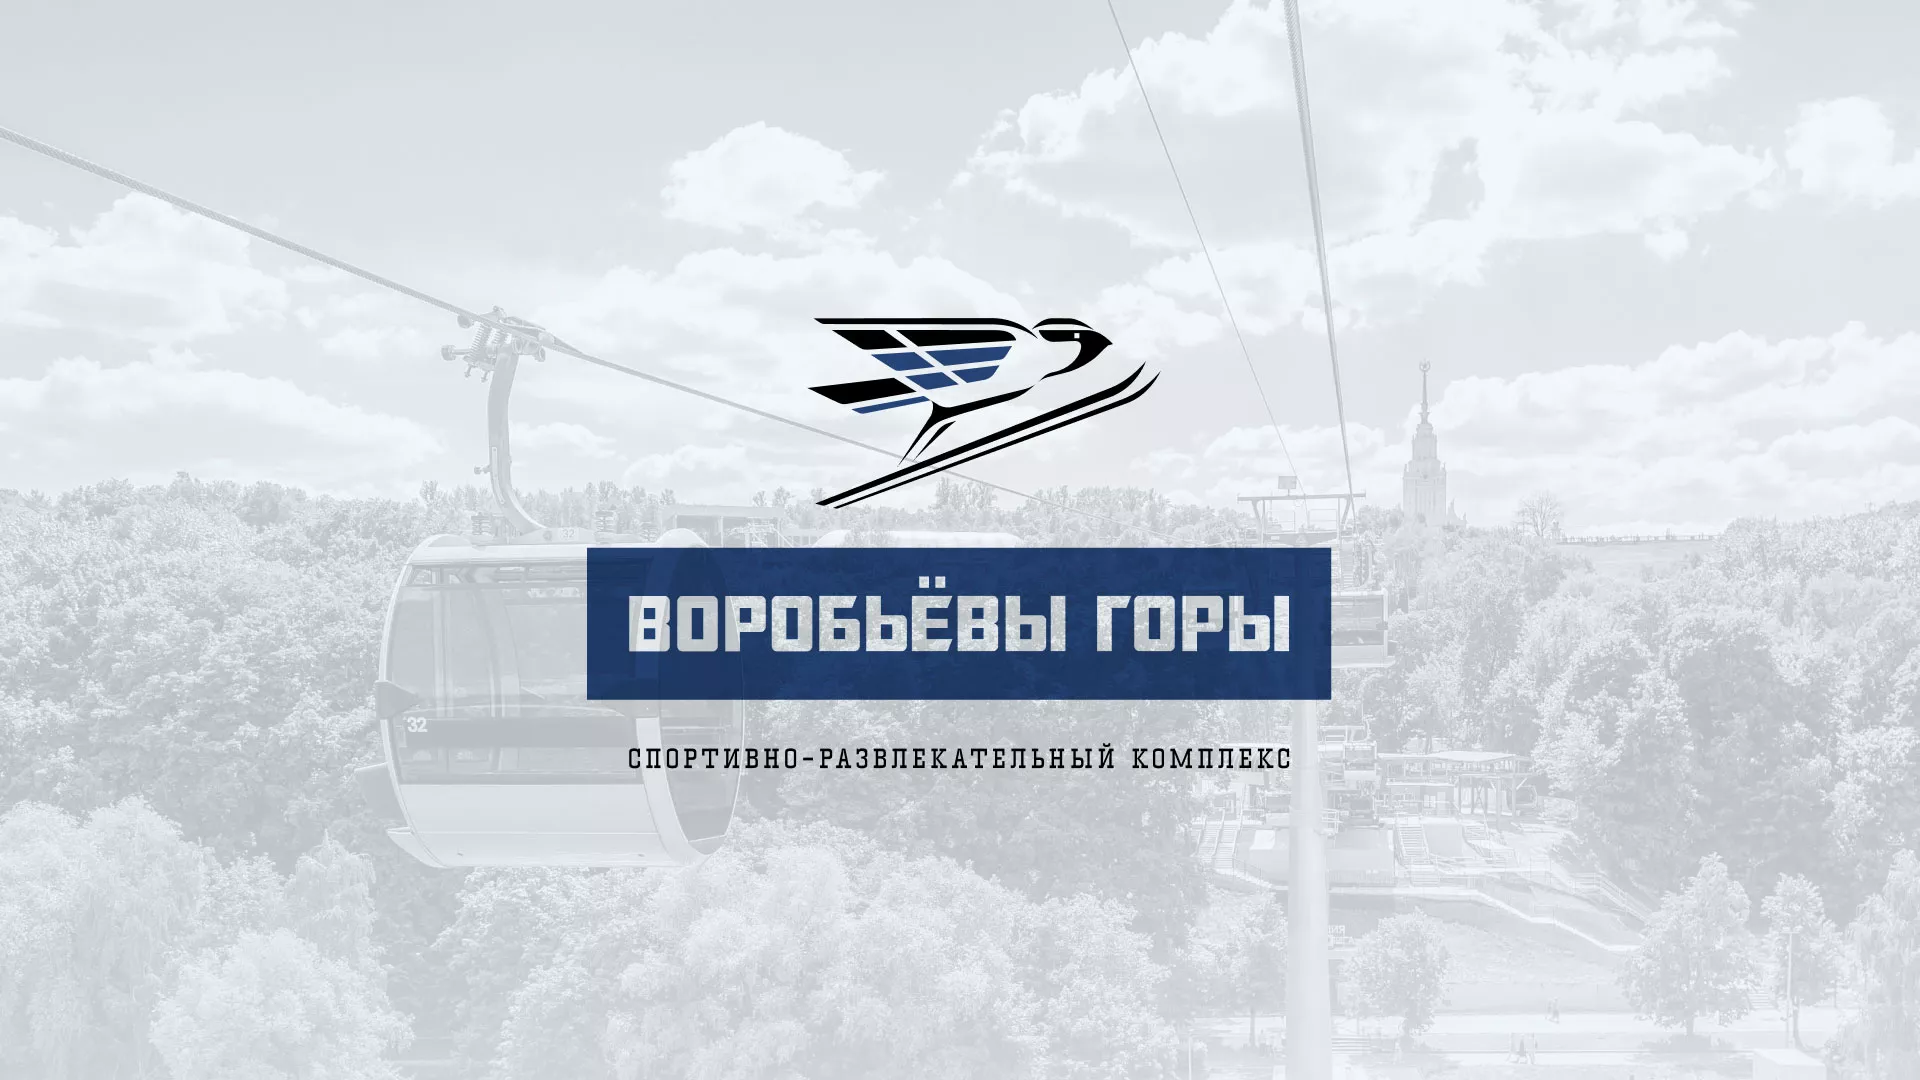 Разработка сайта в Пушкино для спортивно-развлекательного комплекса «Воробьёвы горы»